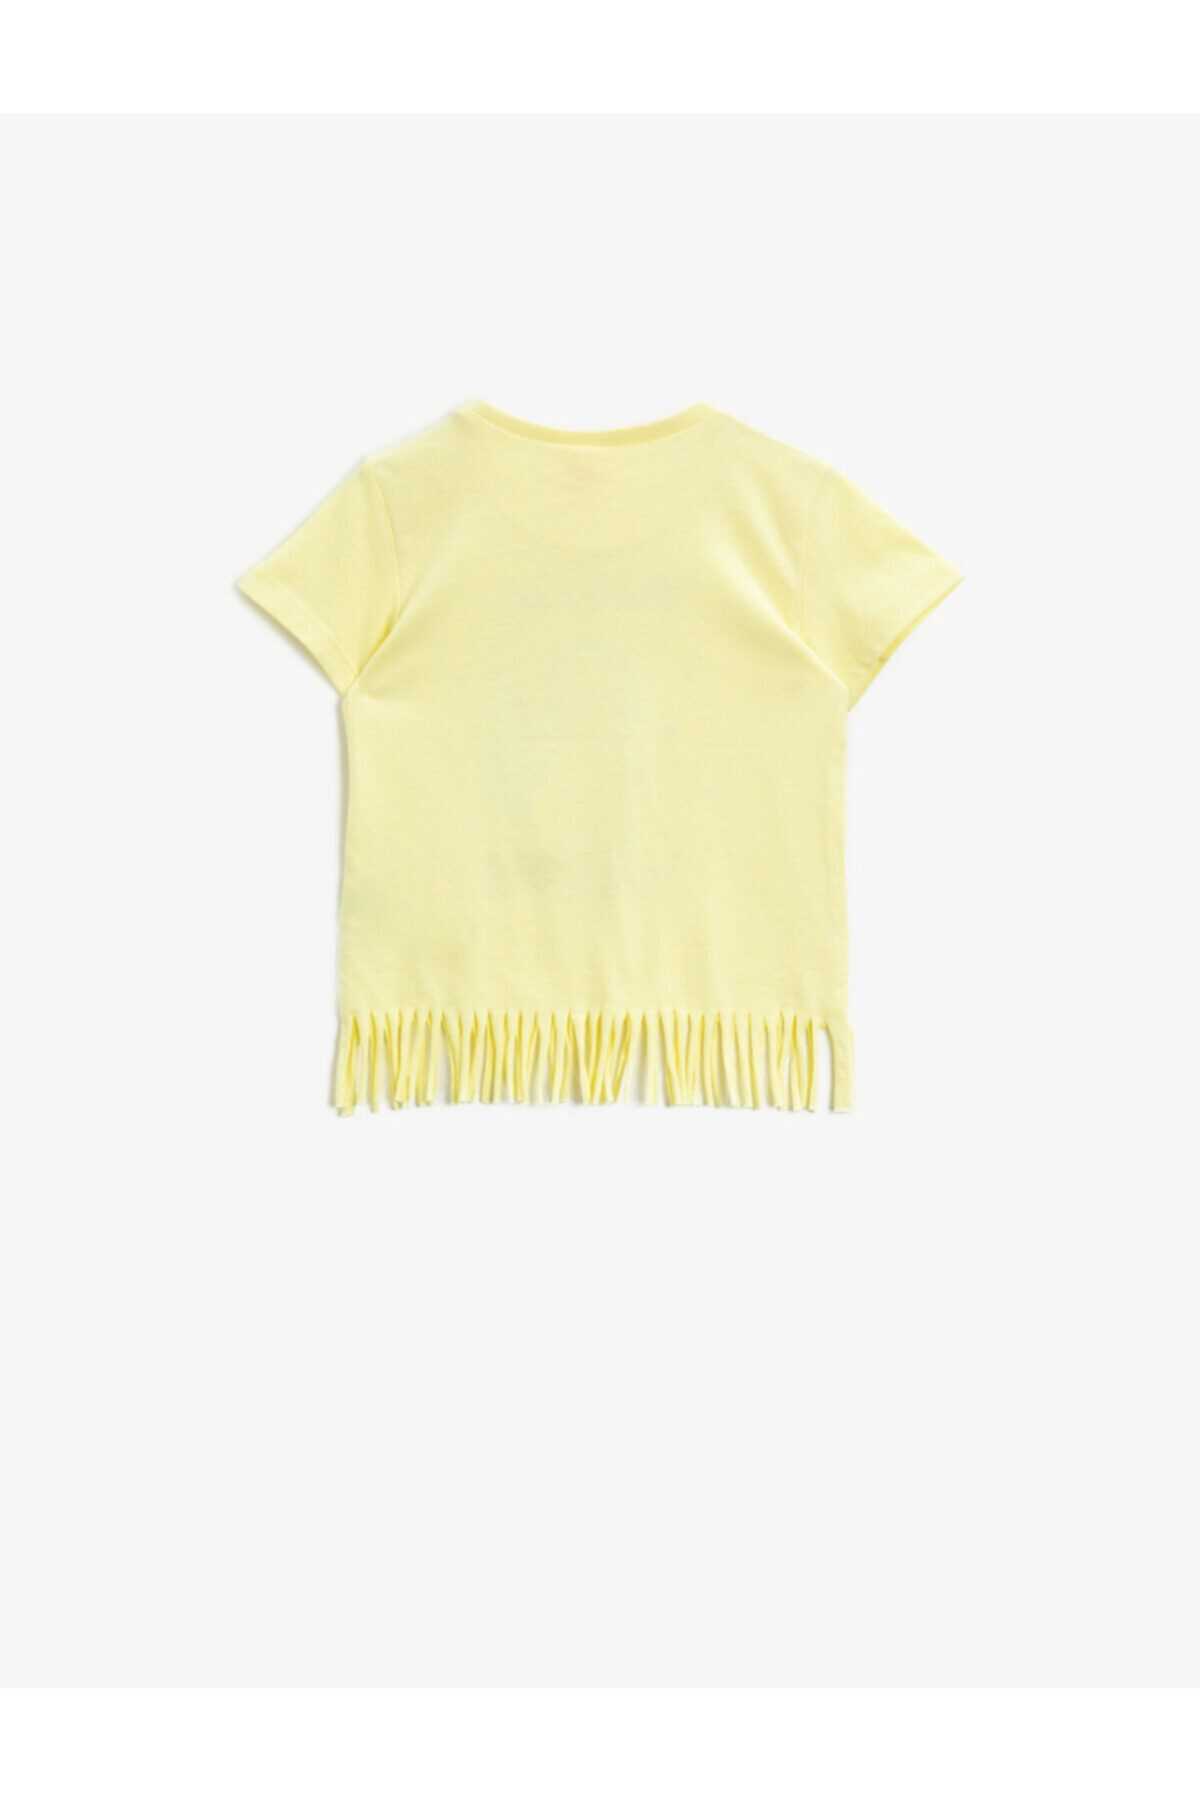 تیشرت خاص نوزاد دخترانه برند کوتون رنگ زرد ty93663407